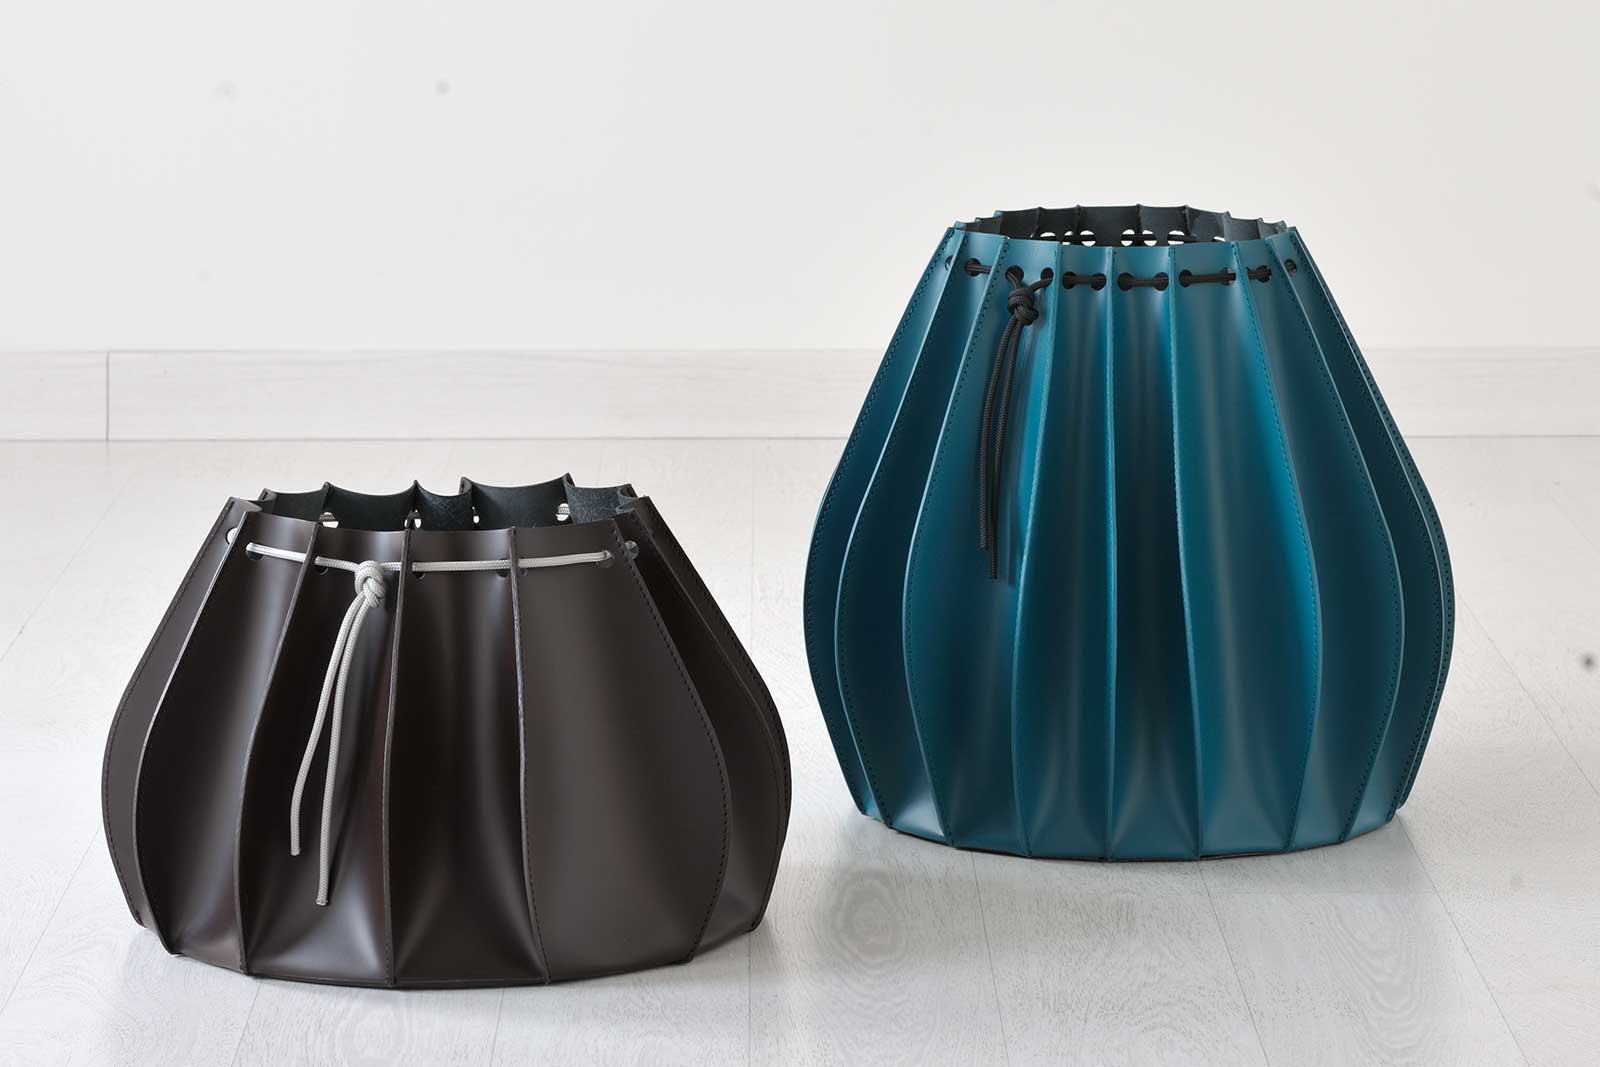 Vases décoratifs en cuir effet plissé, design Gian Paolo Venier. Accessoires d'ameublement haut de gamma made in Italy. Vente en ligne, livraison gratuite.